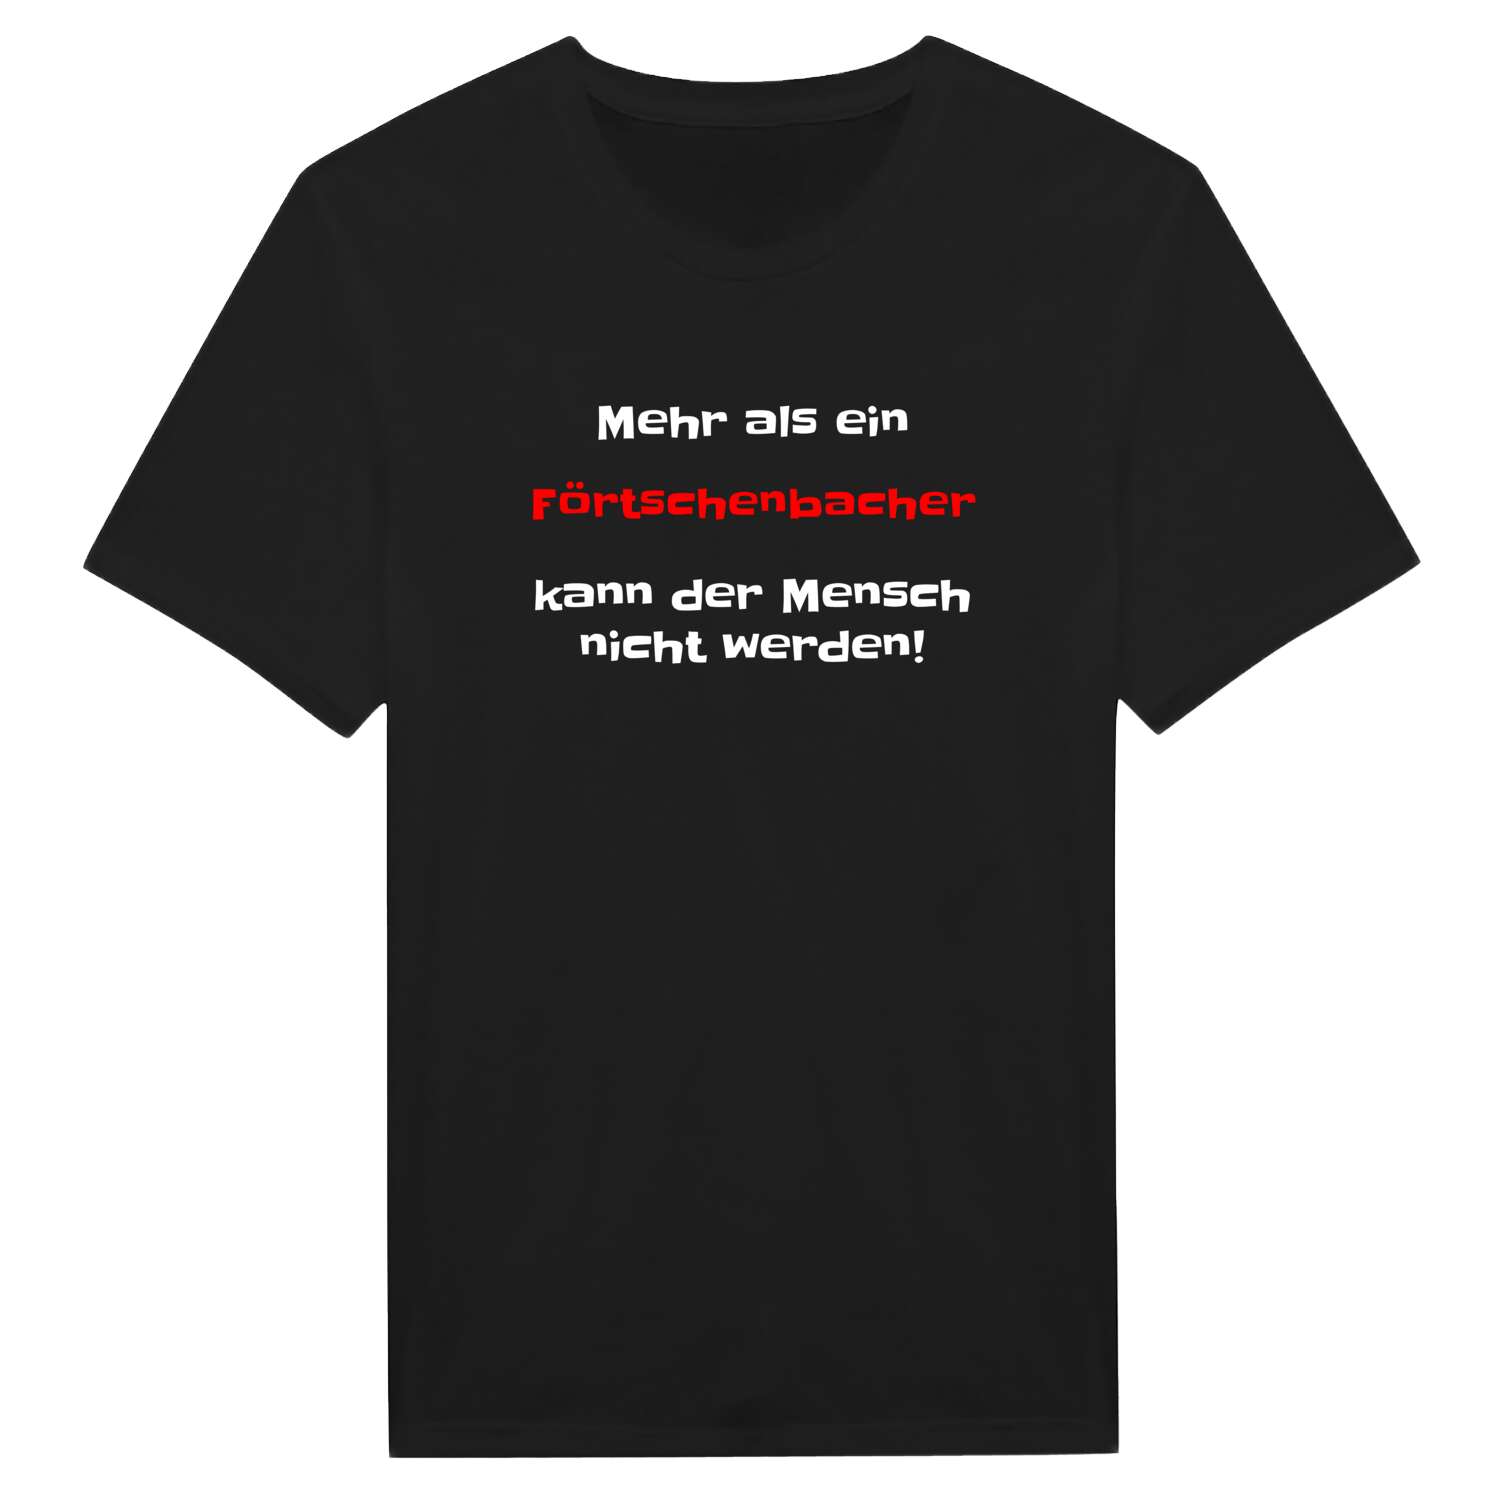 Förtschenbach T-Shirt »Mehr als ein«